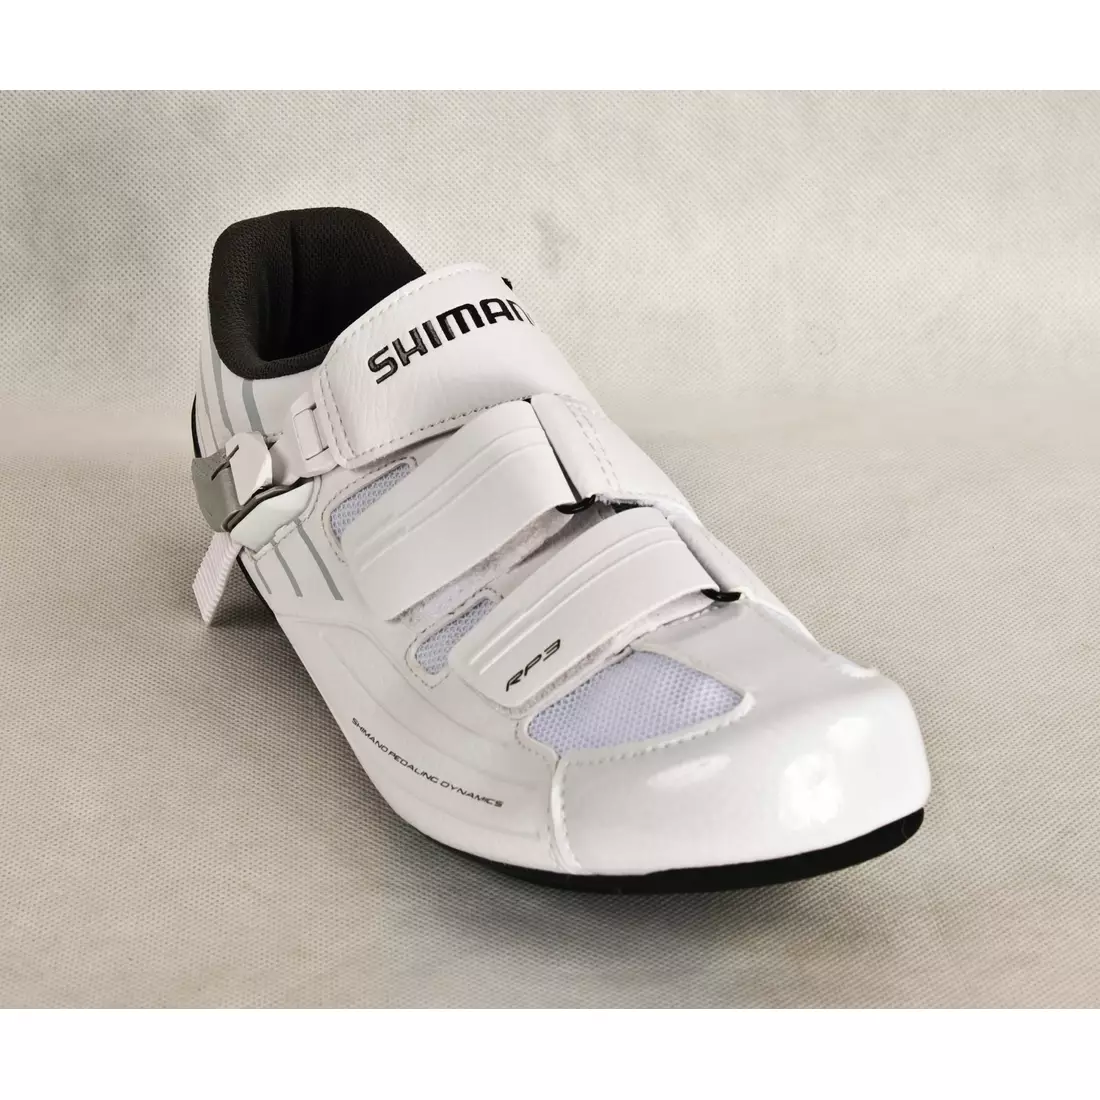 Silniční cyklistické boty SHIMANO SHRP300SW, bílé